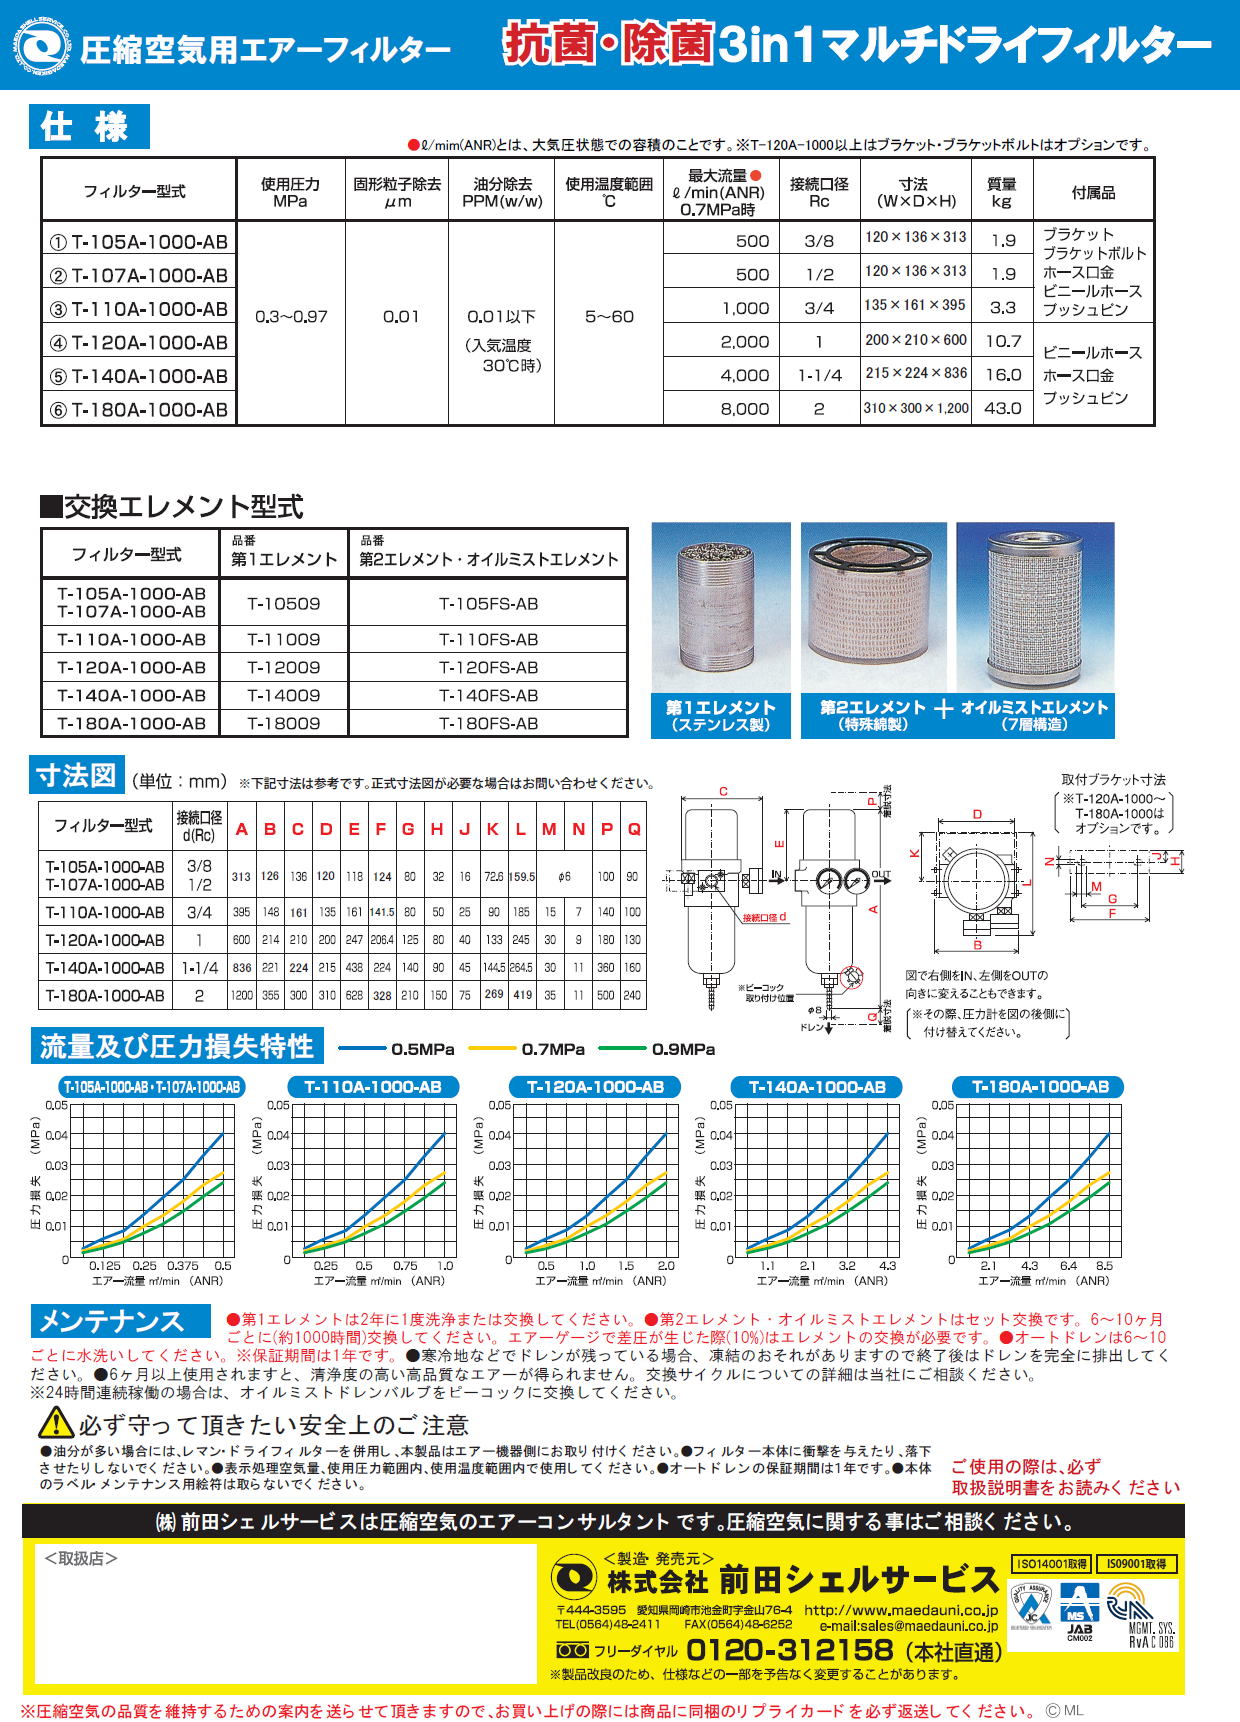 前田シェルサービス 抗菌3in1・マルチドライフィルター 圧縮空気用 